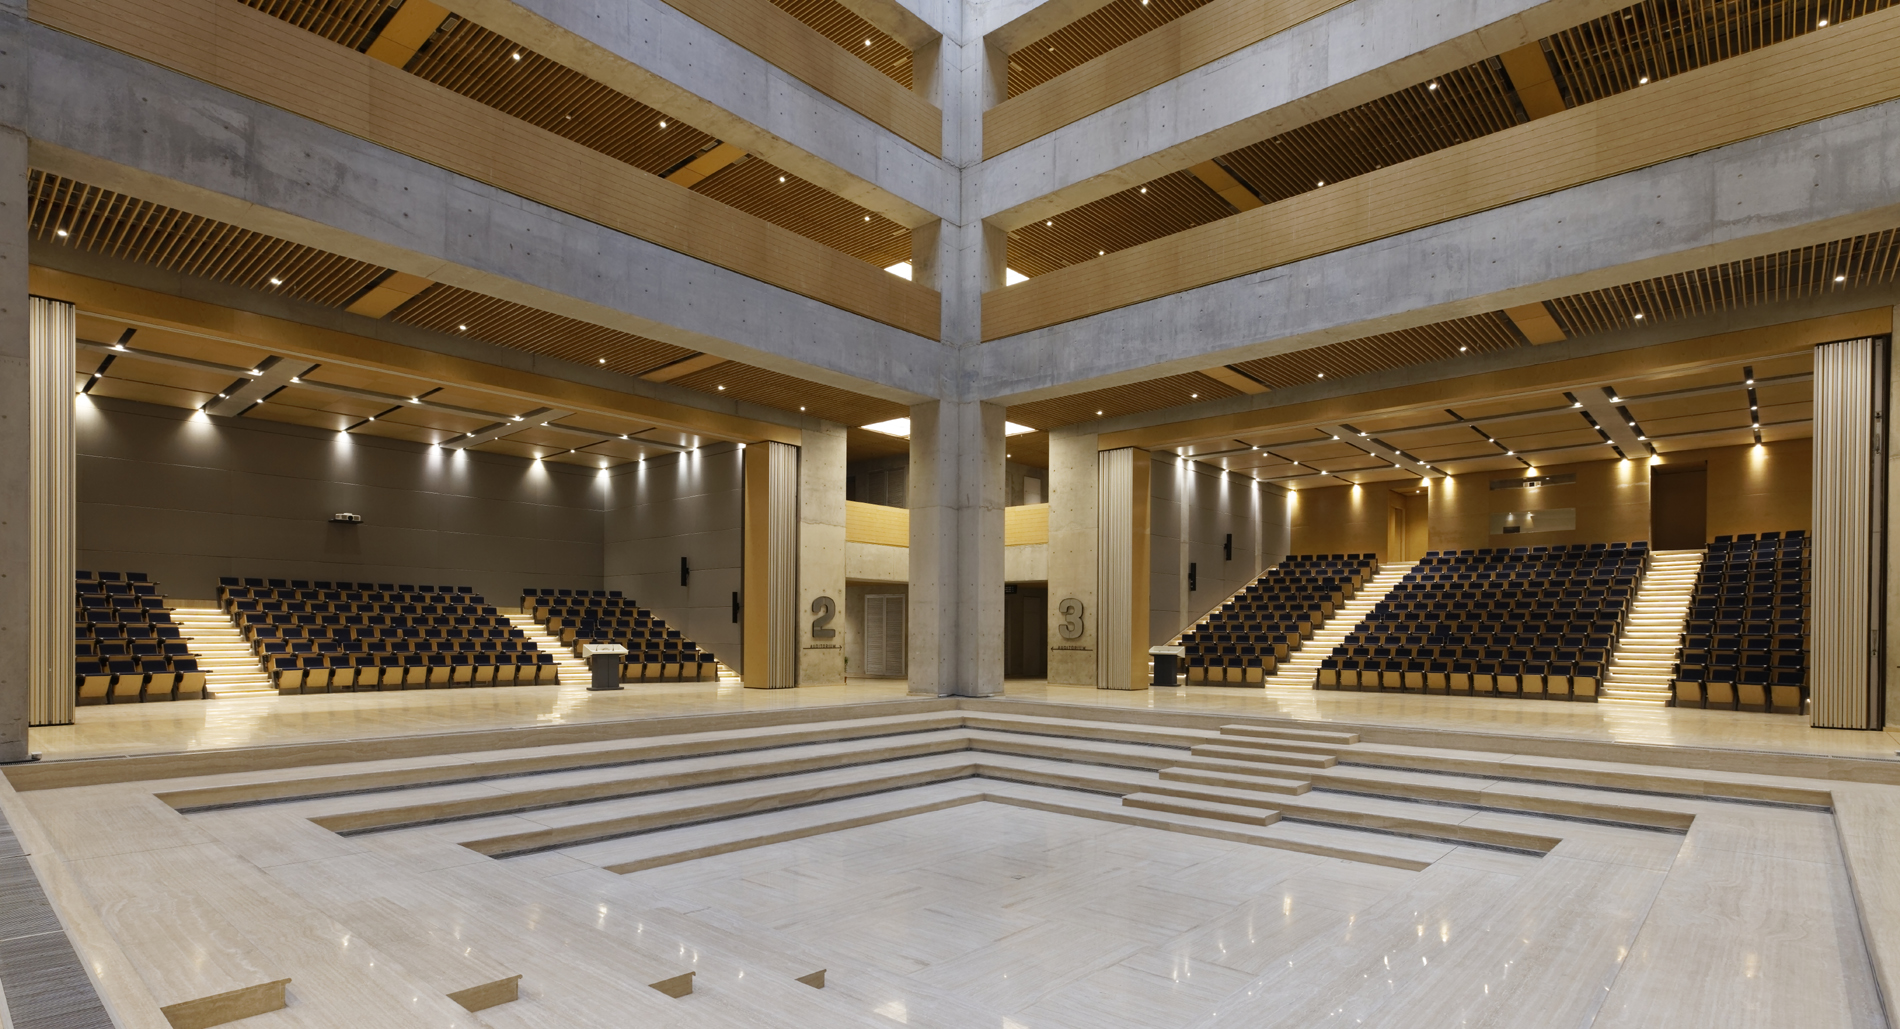 D Y Patil Centre of Excellence - Auditorium with Amphitheatre